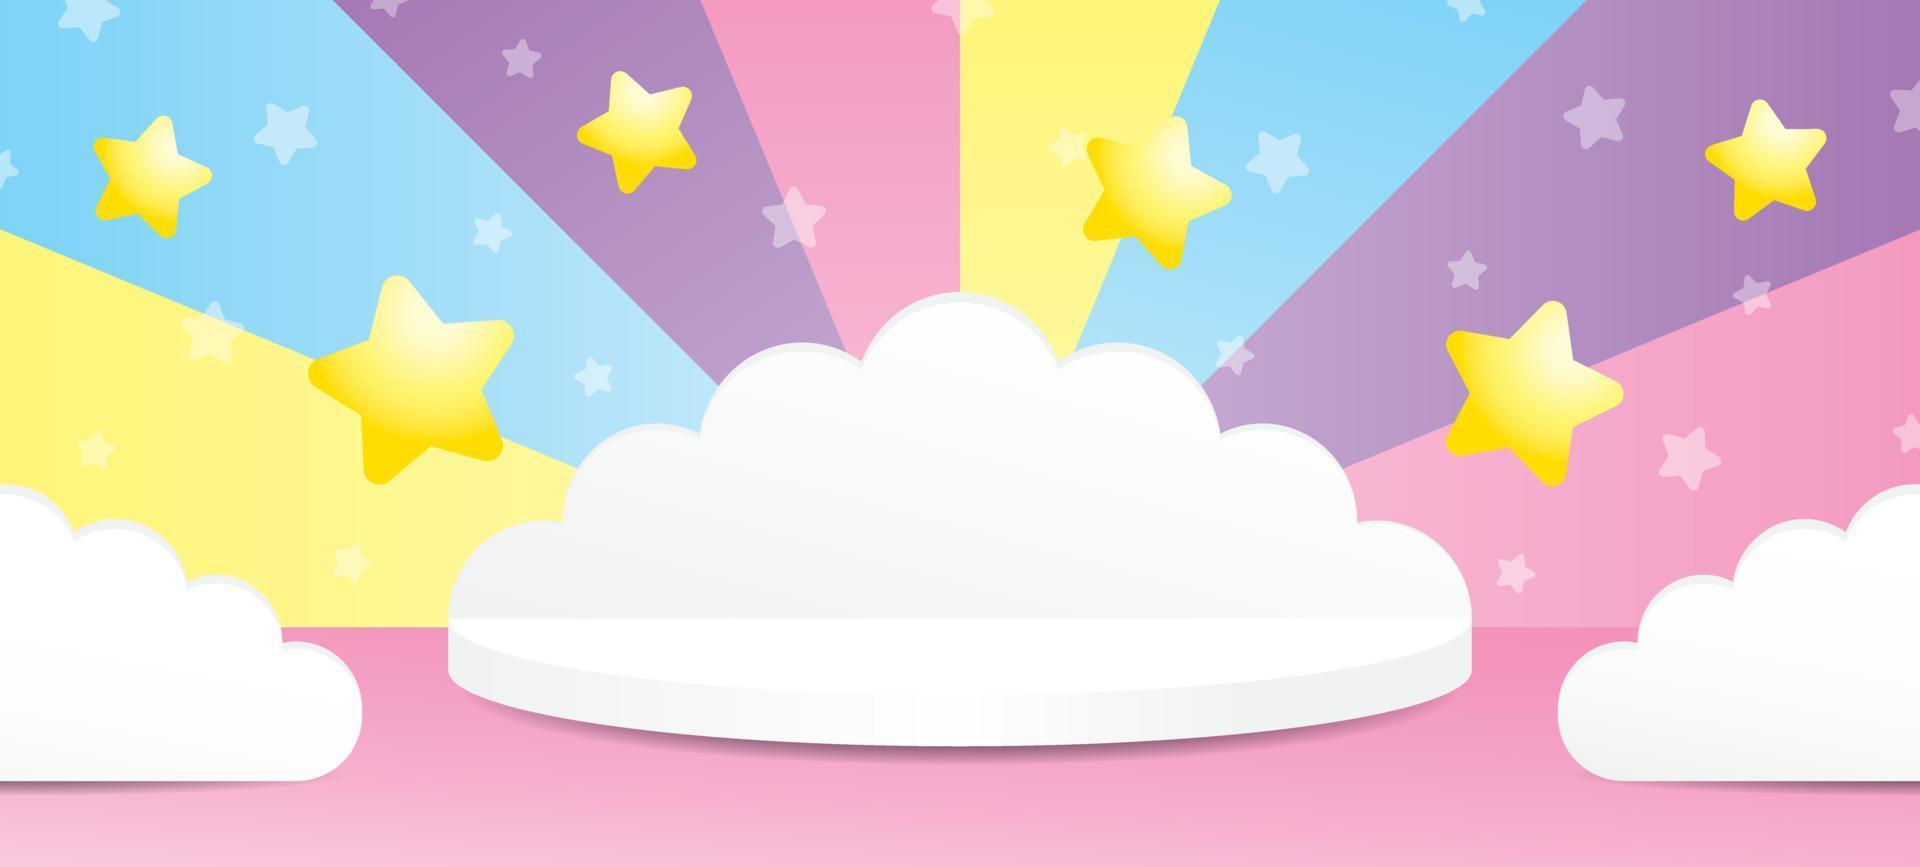 schattig wit wolkvormpodium met sterrenelement op zoete kleurrijke pastelmuur en roze vloer 3d illustratie vectorscène voor het plaatsen van uw object vector